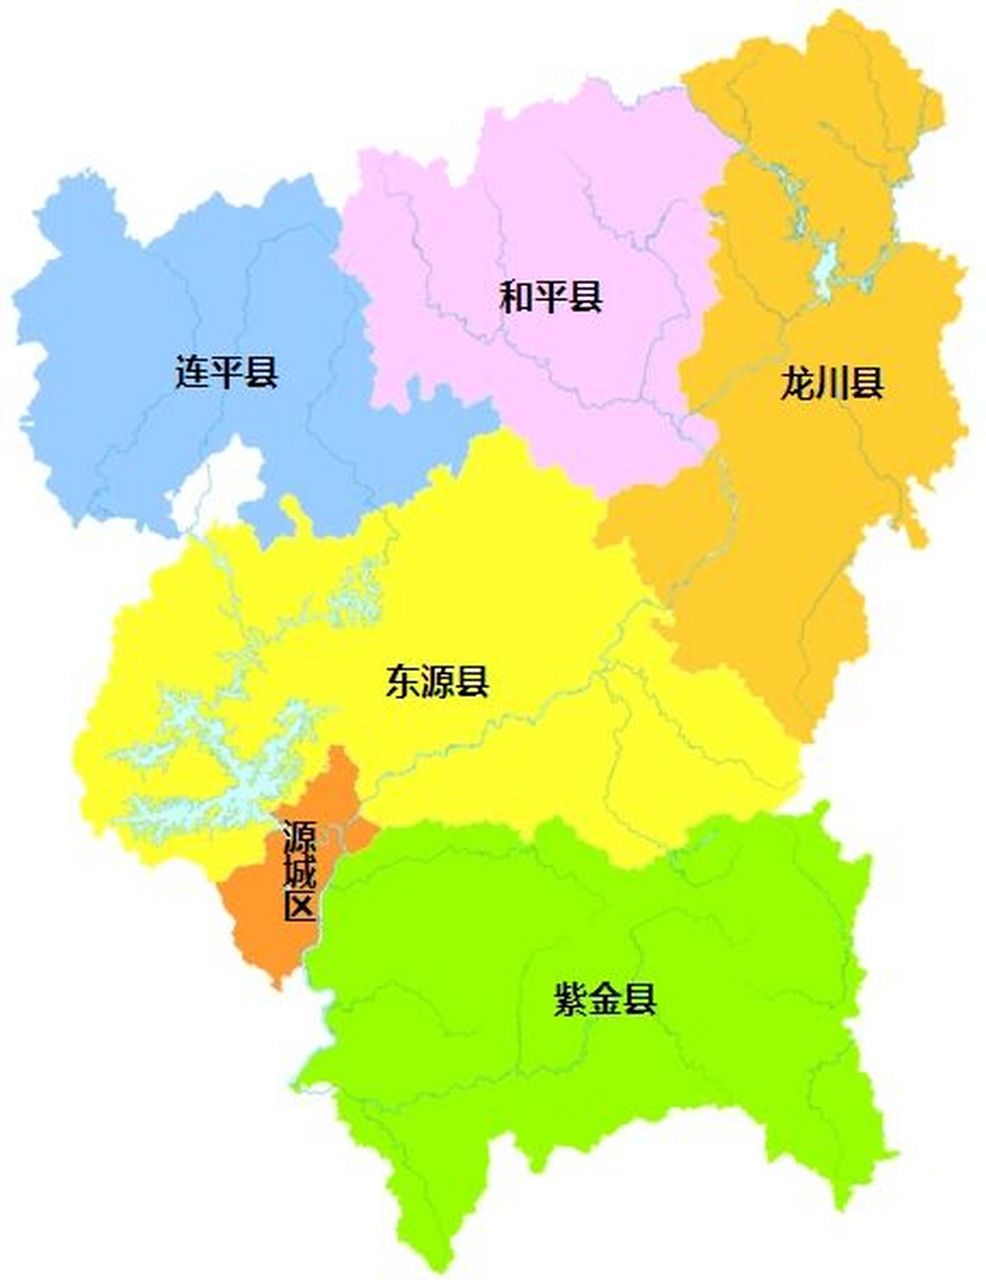 河源全市划分为 1个区:源城区 5个县:东源县,和平县,龙川县,紫金县